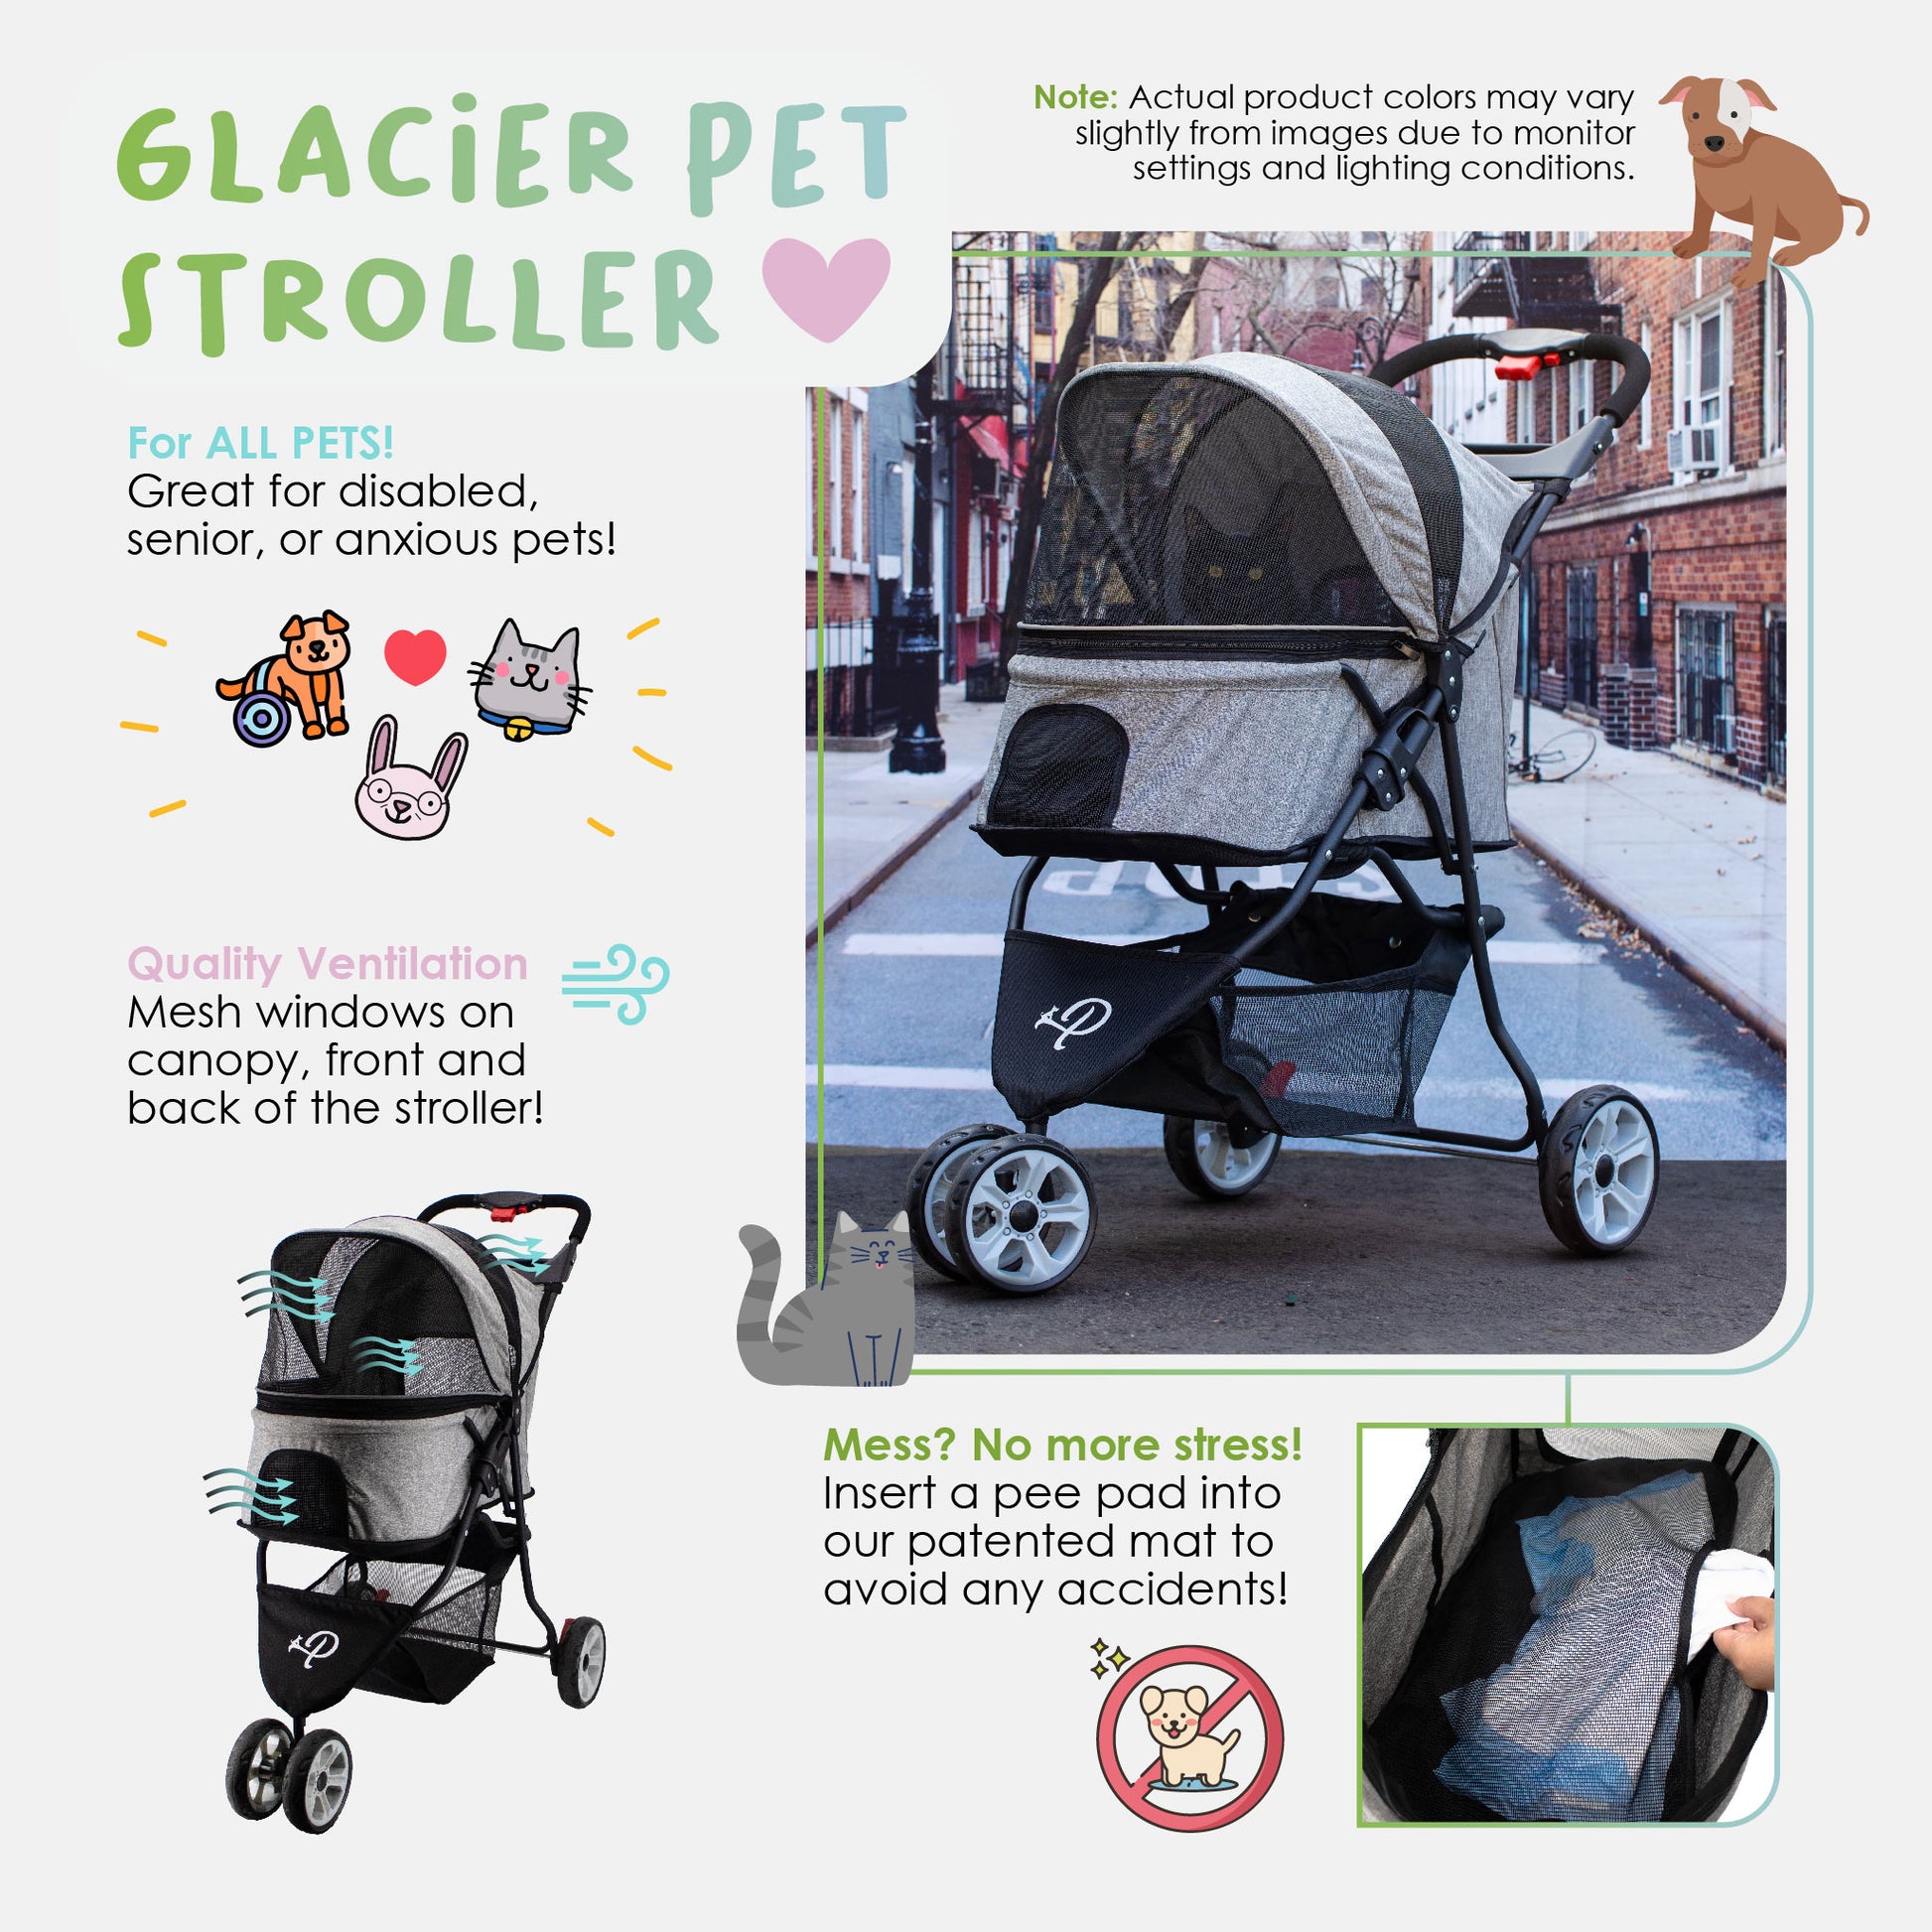 about petique's glacier pet stroller